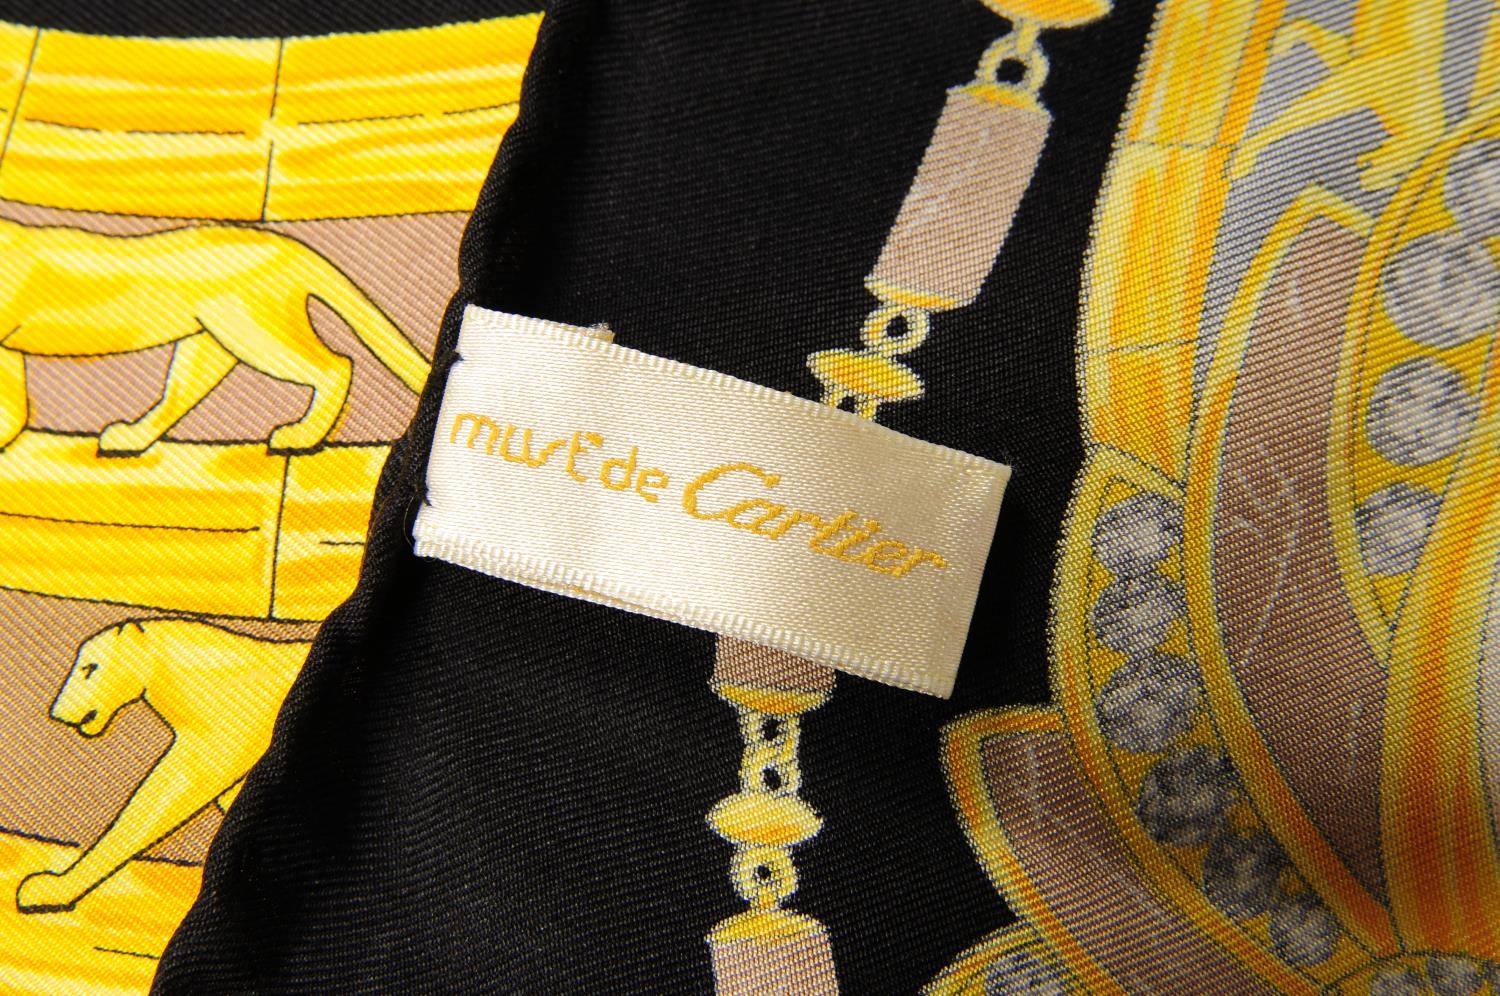 CARTIER - a Must De Cartier Scarab silk scarf. - Image 3 of 3